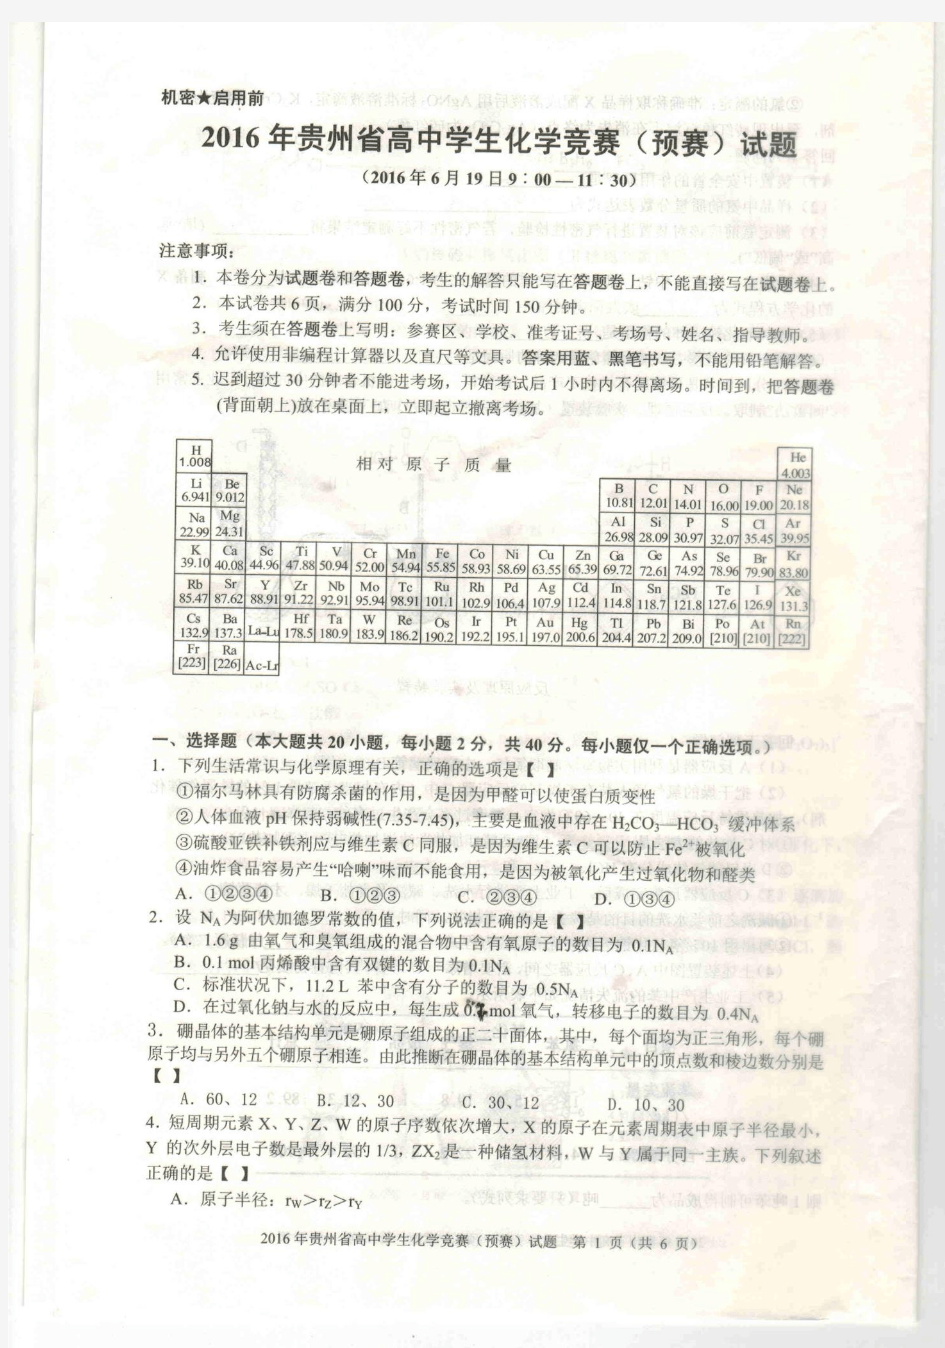 2016年贵州省高中化学竞赛(预赛)试题及答题卡(扫描版)Scan0001